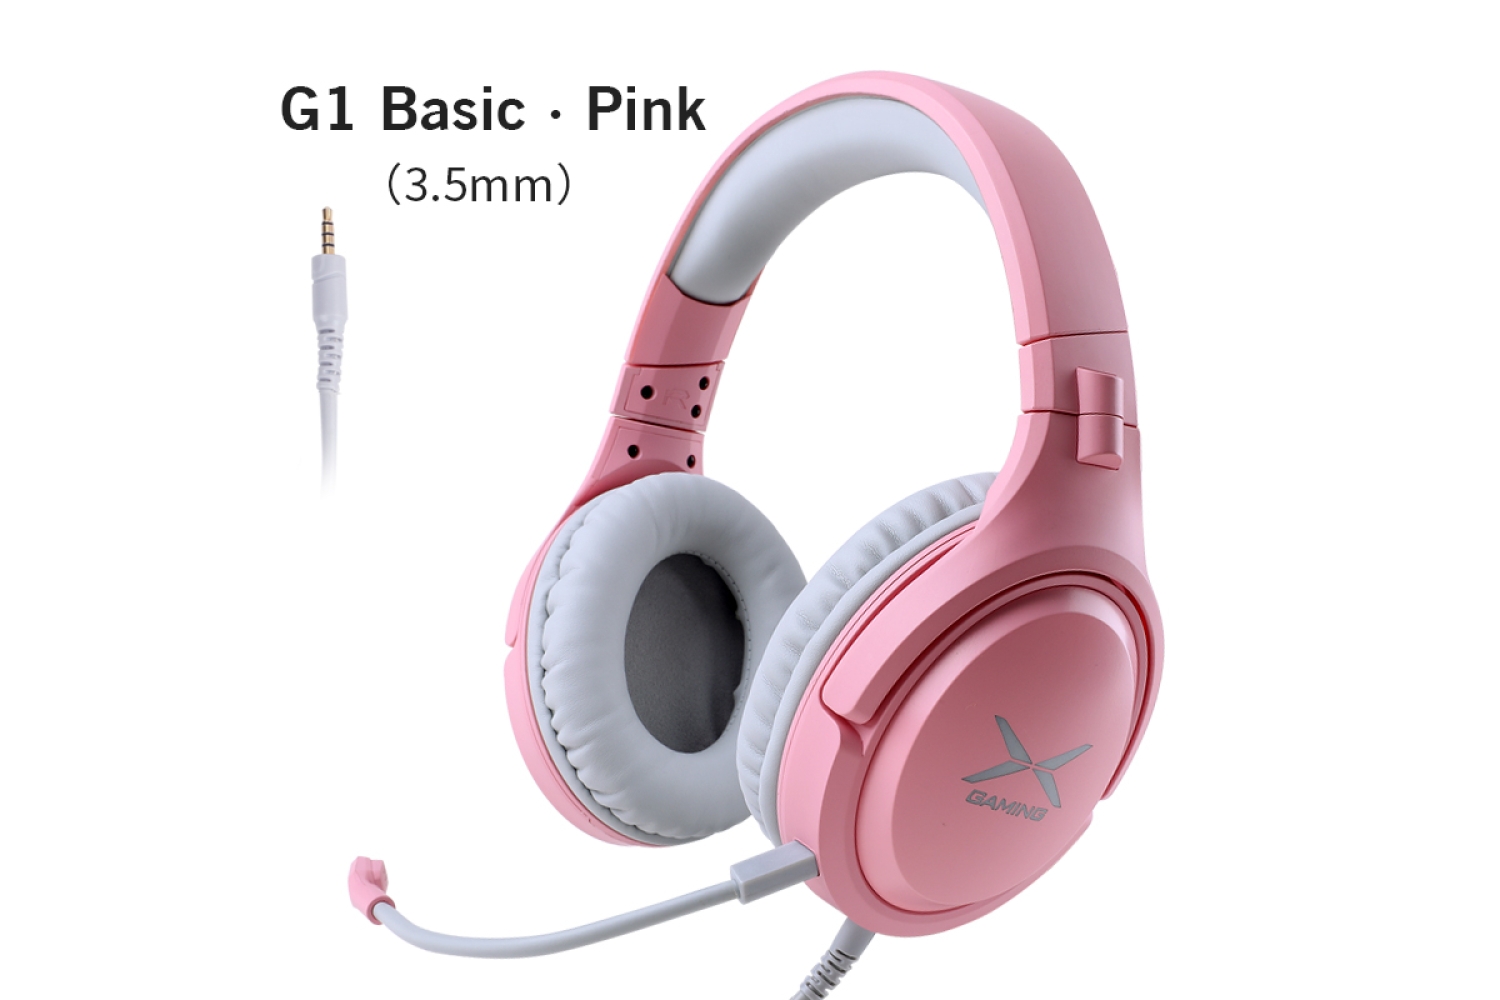 G1 Basic Pink Gaming Headset